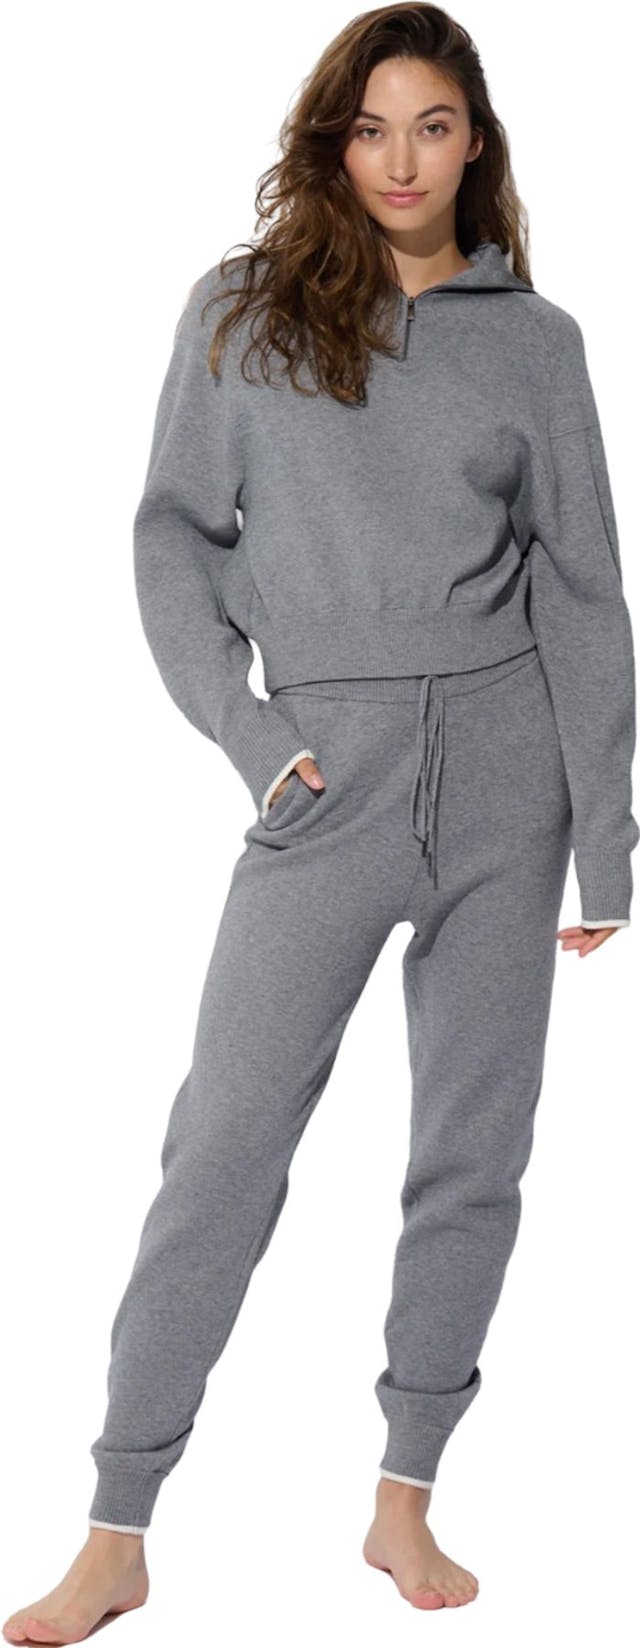 Image de produit pour Pantalon de jogging en tricot - Femme